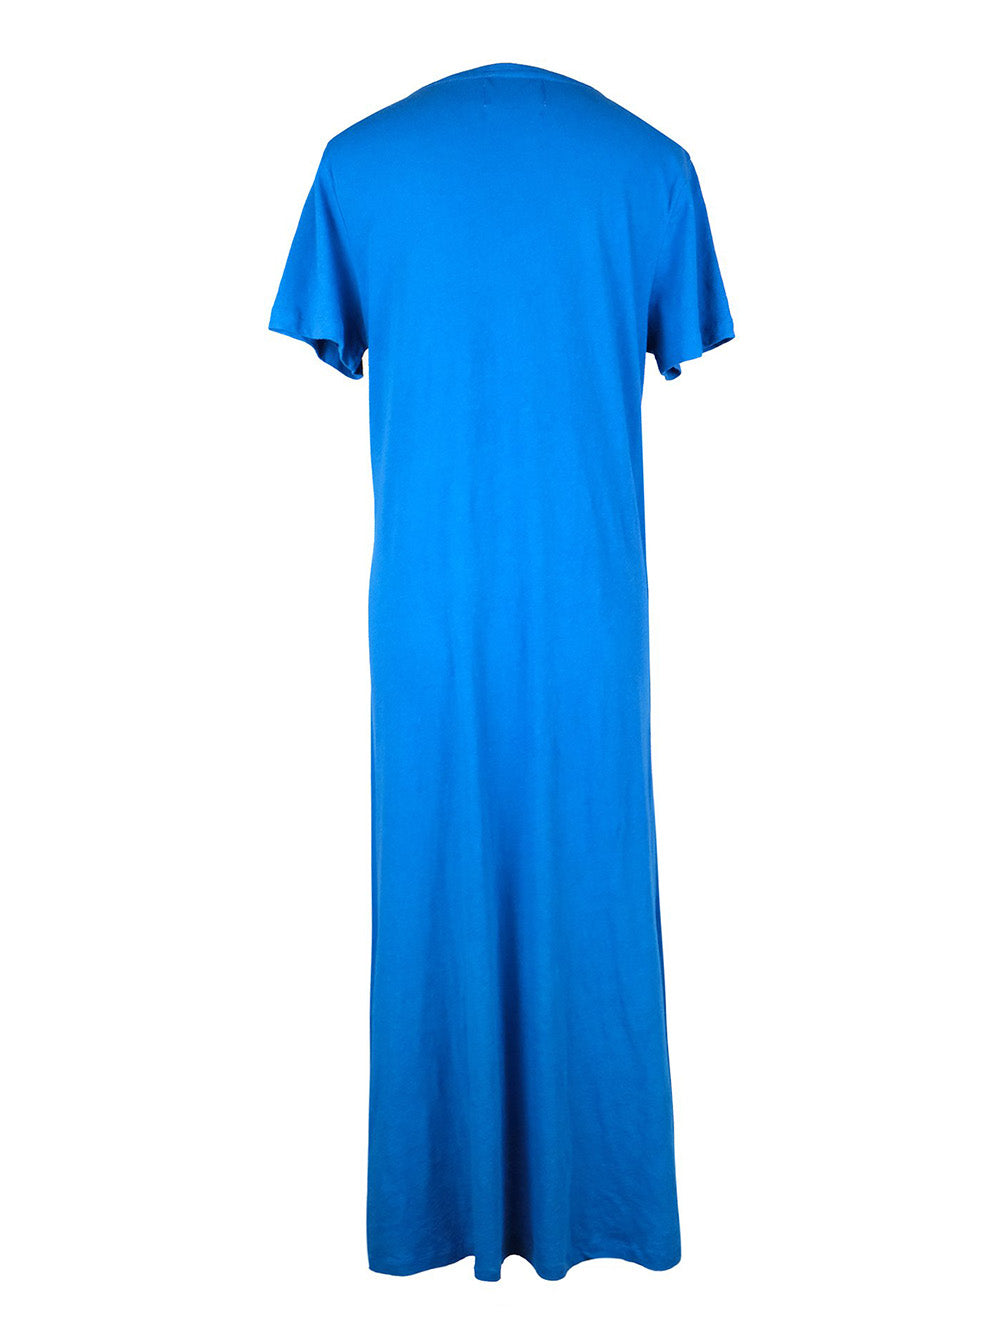 BLUE CAPTAIN DRESS